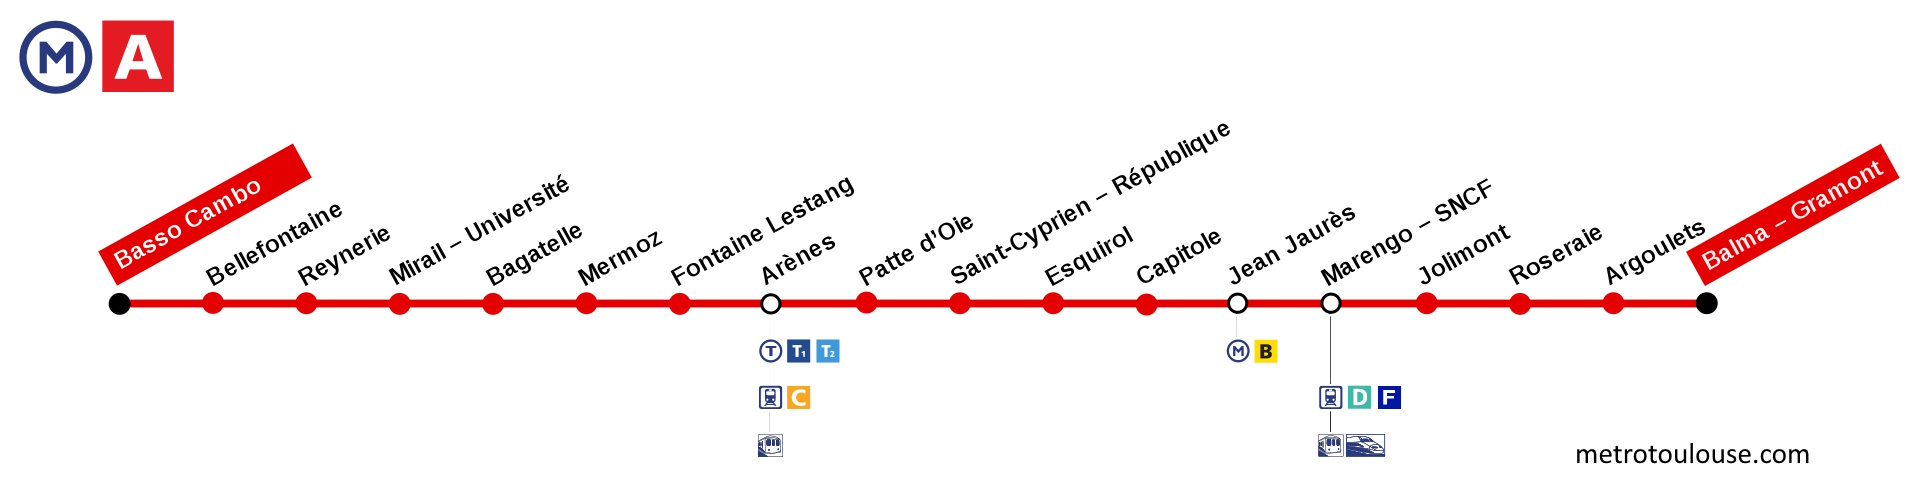 Linea A del metro de Toulouse